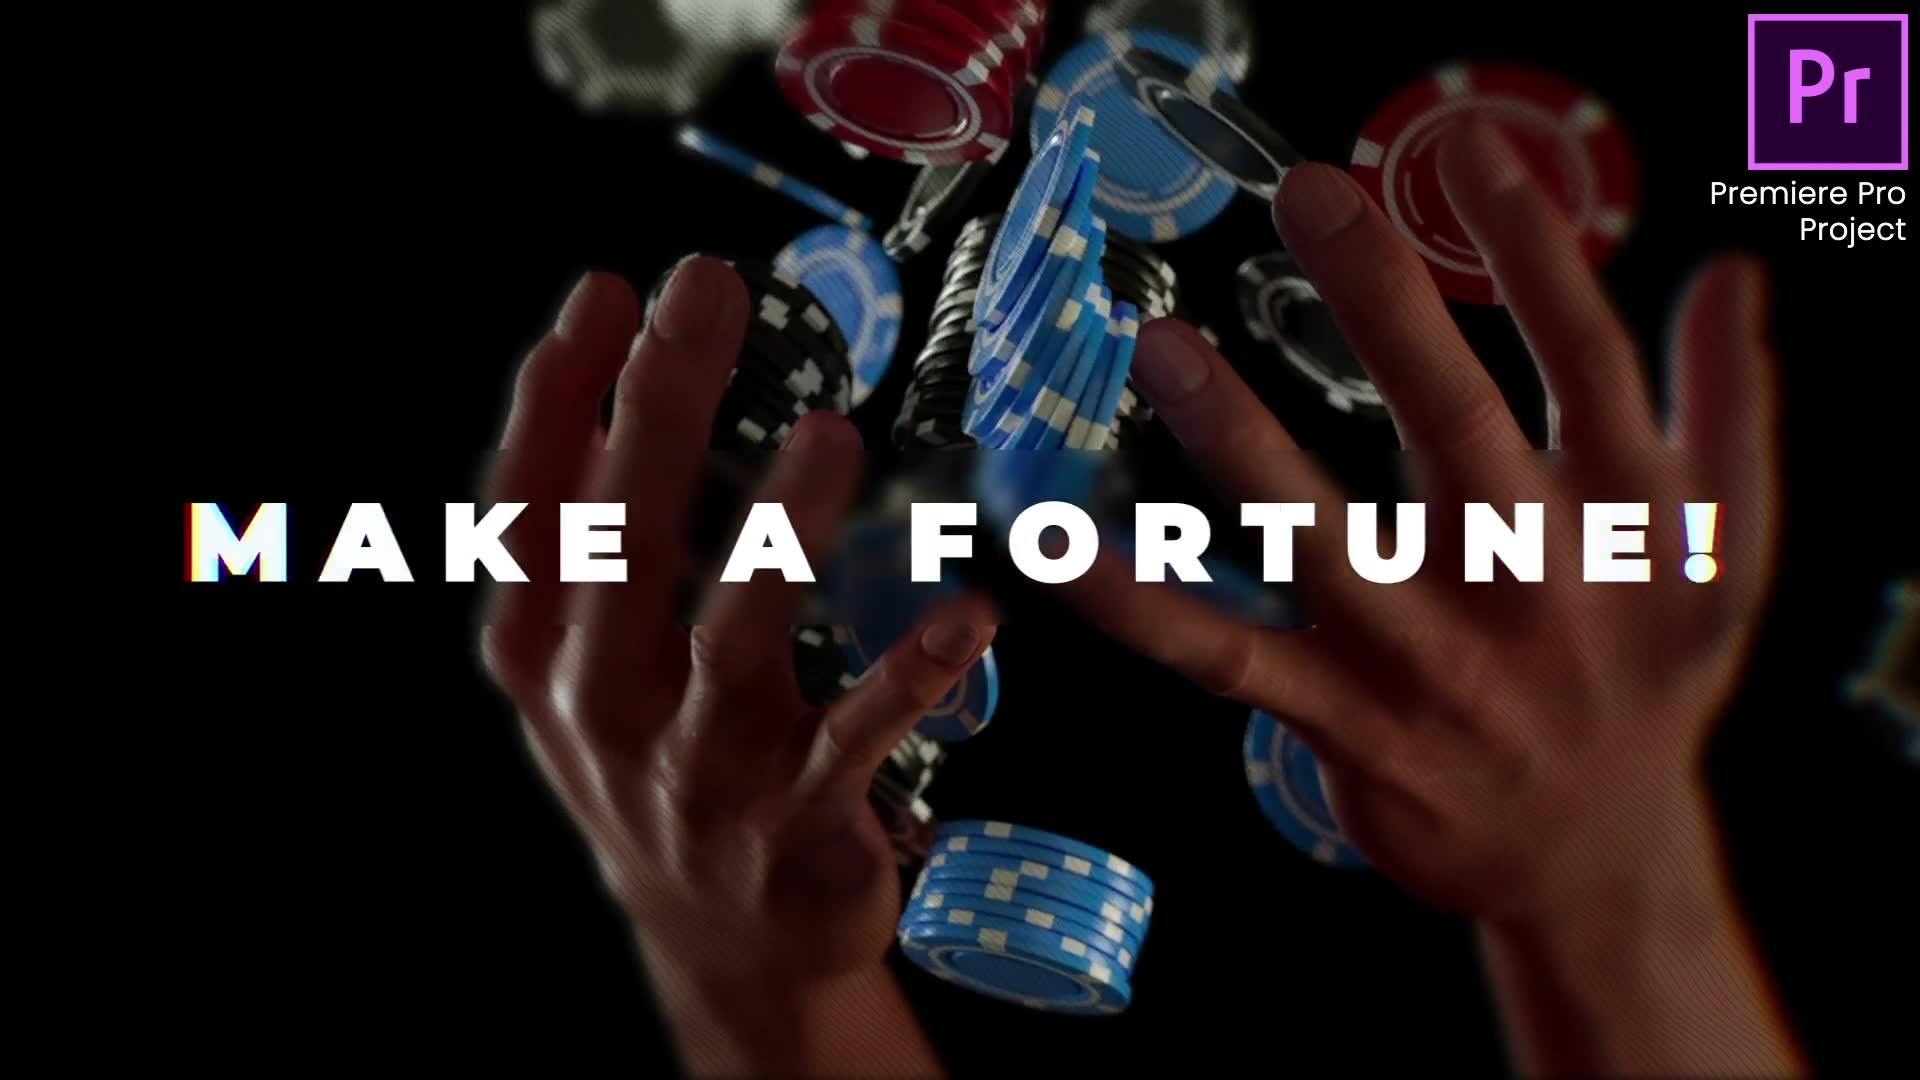 Online Casino Promo |Online Roulette Intro | Slot Machine Game| Poker App| Premiere Pro Videohive 33948684 Premiere Pro Image 2